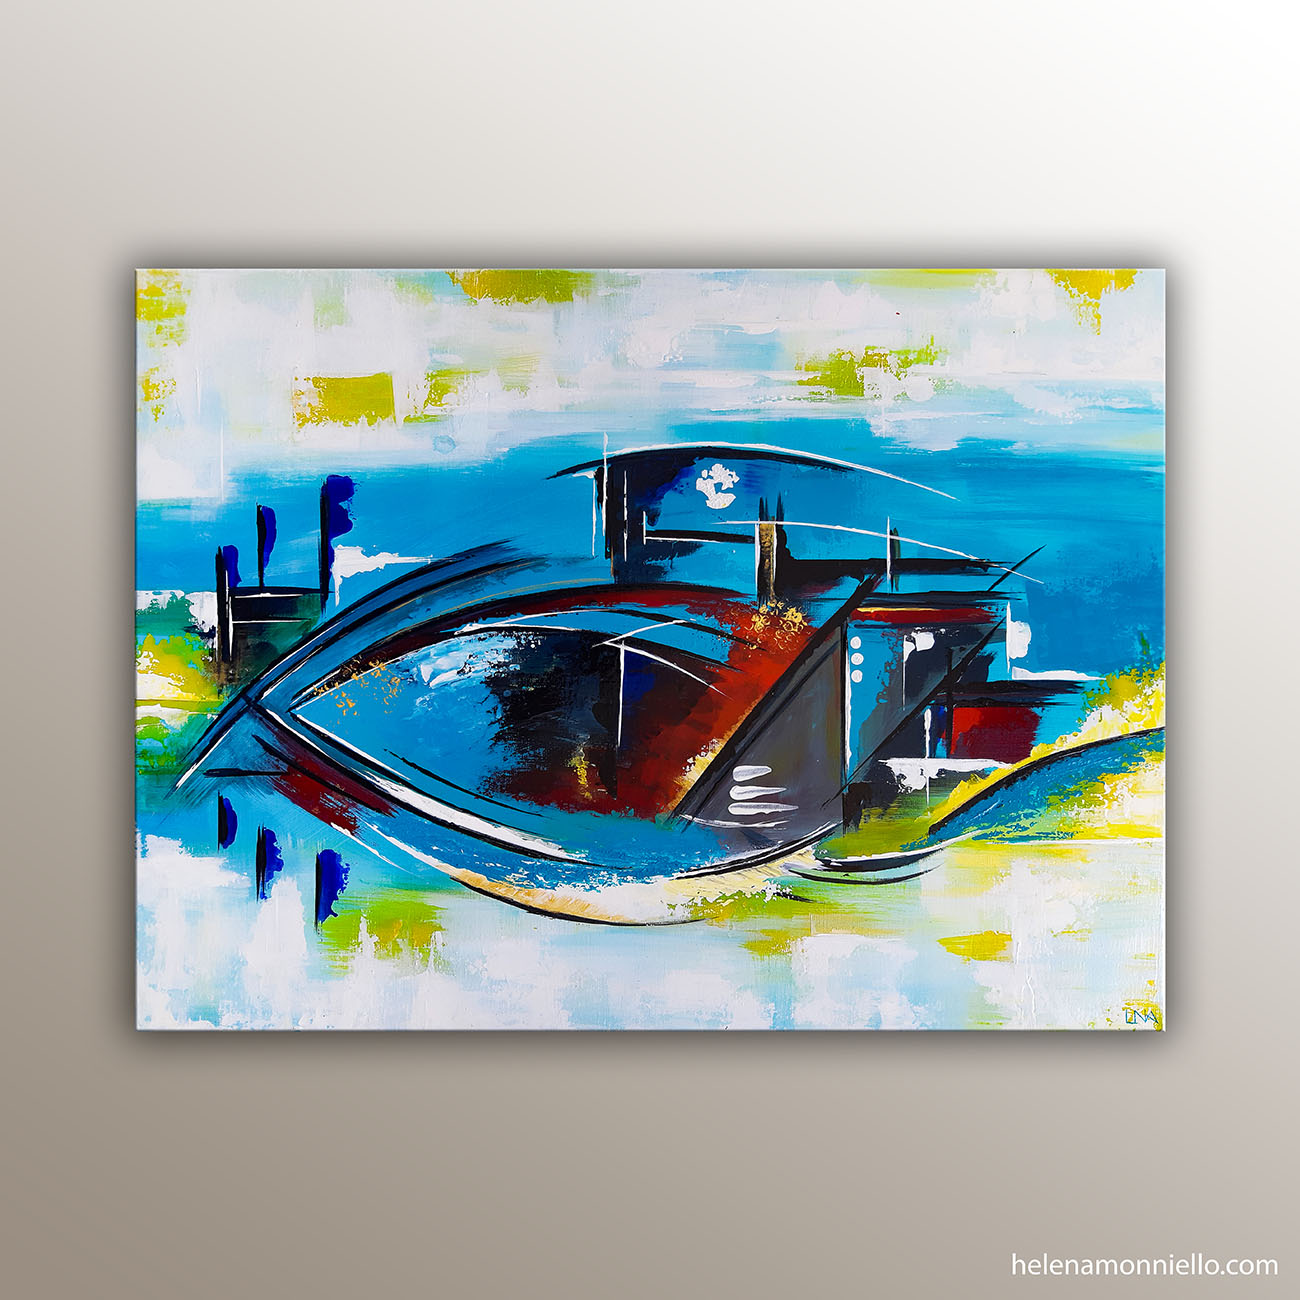 Peinture abstraite de l'artiste Helena Monniello représentant un bateau, un oeil, un poisson selon son imagination.